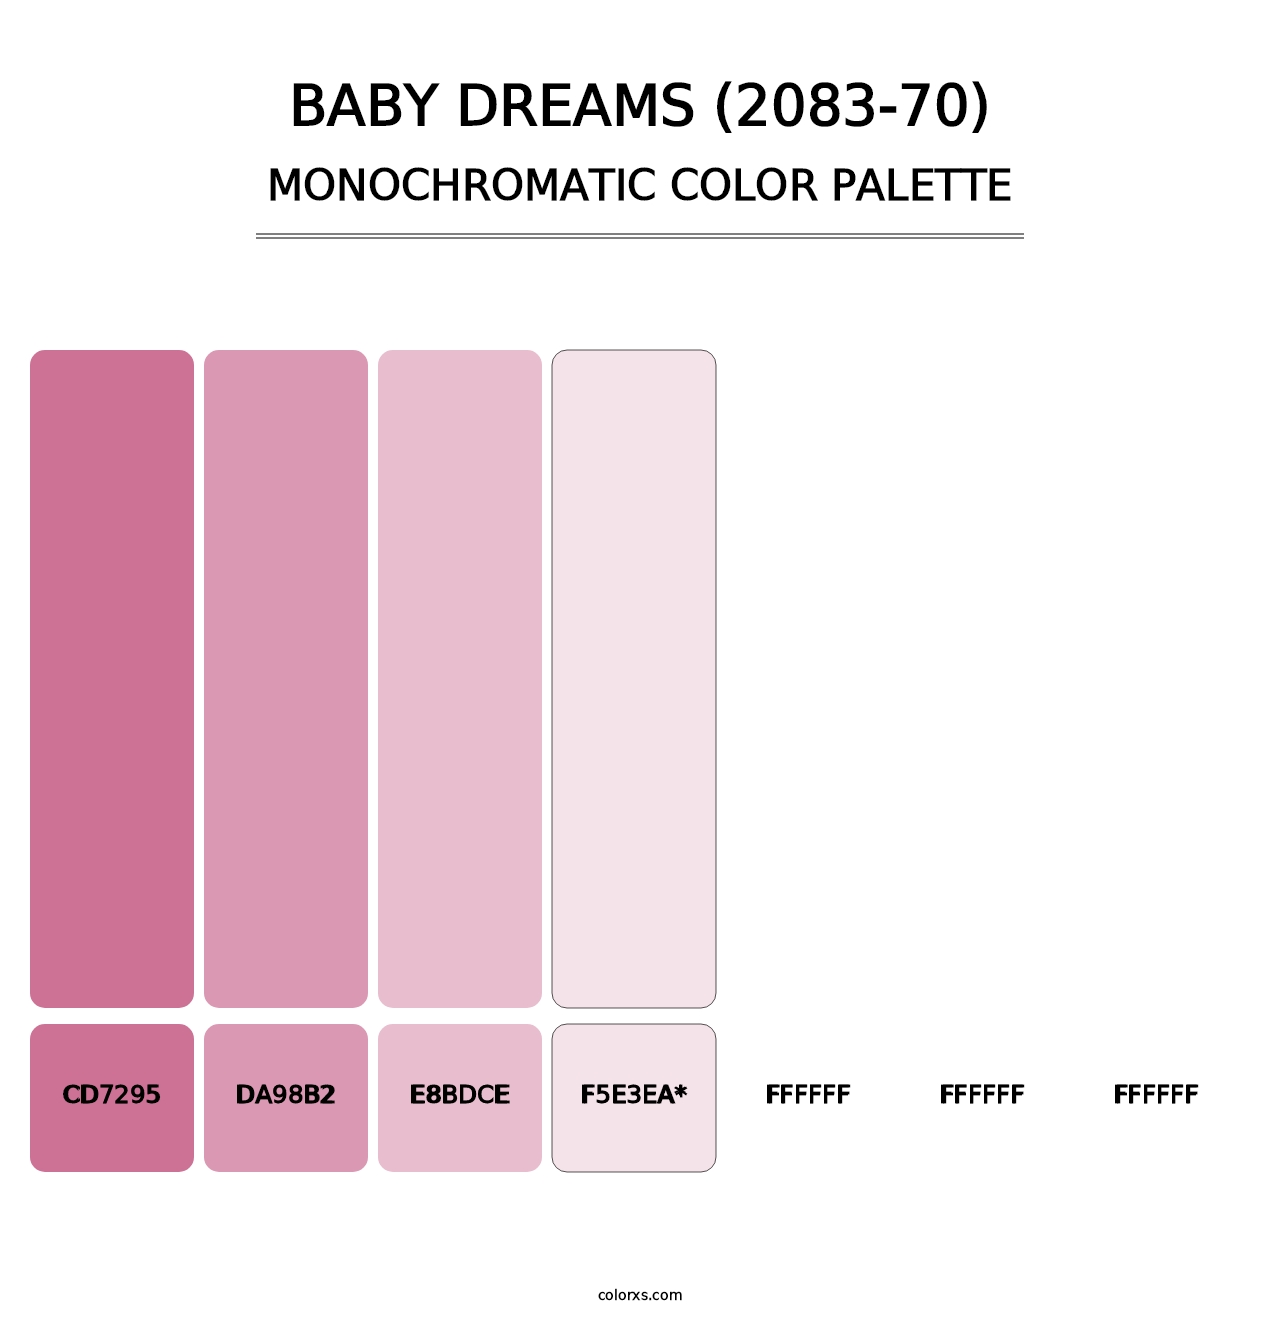 Baby Dreams (2083-70) - Monochromatic Color Palette